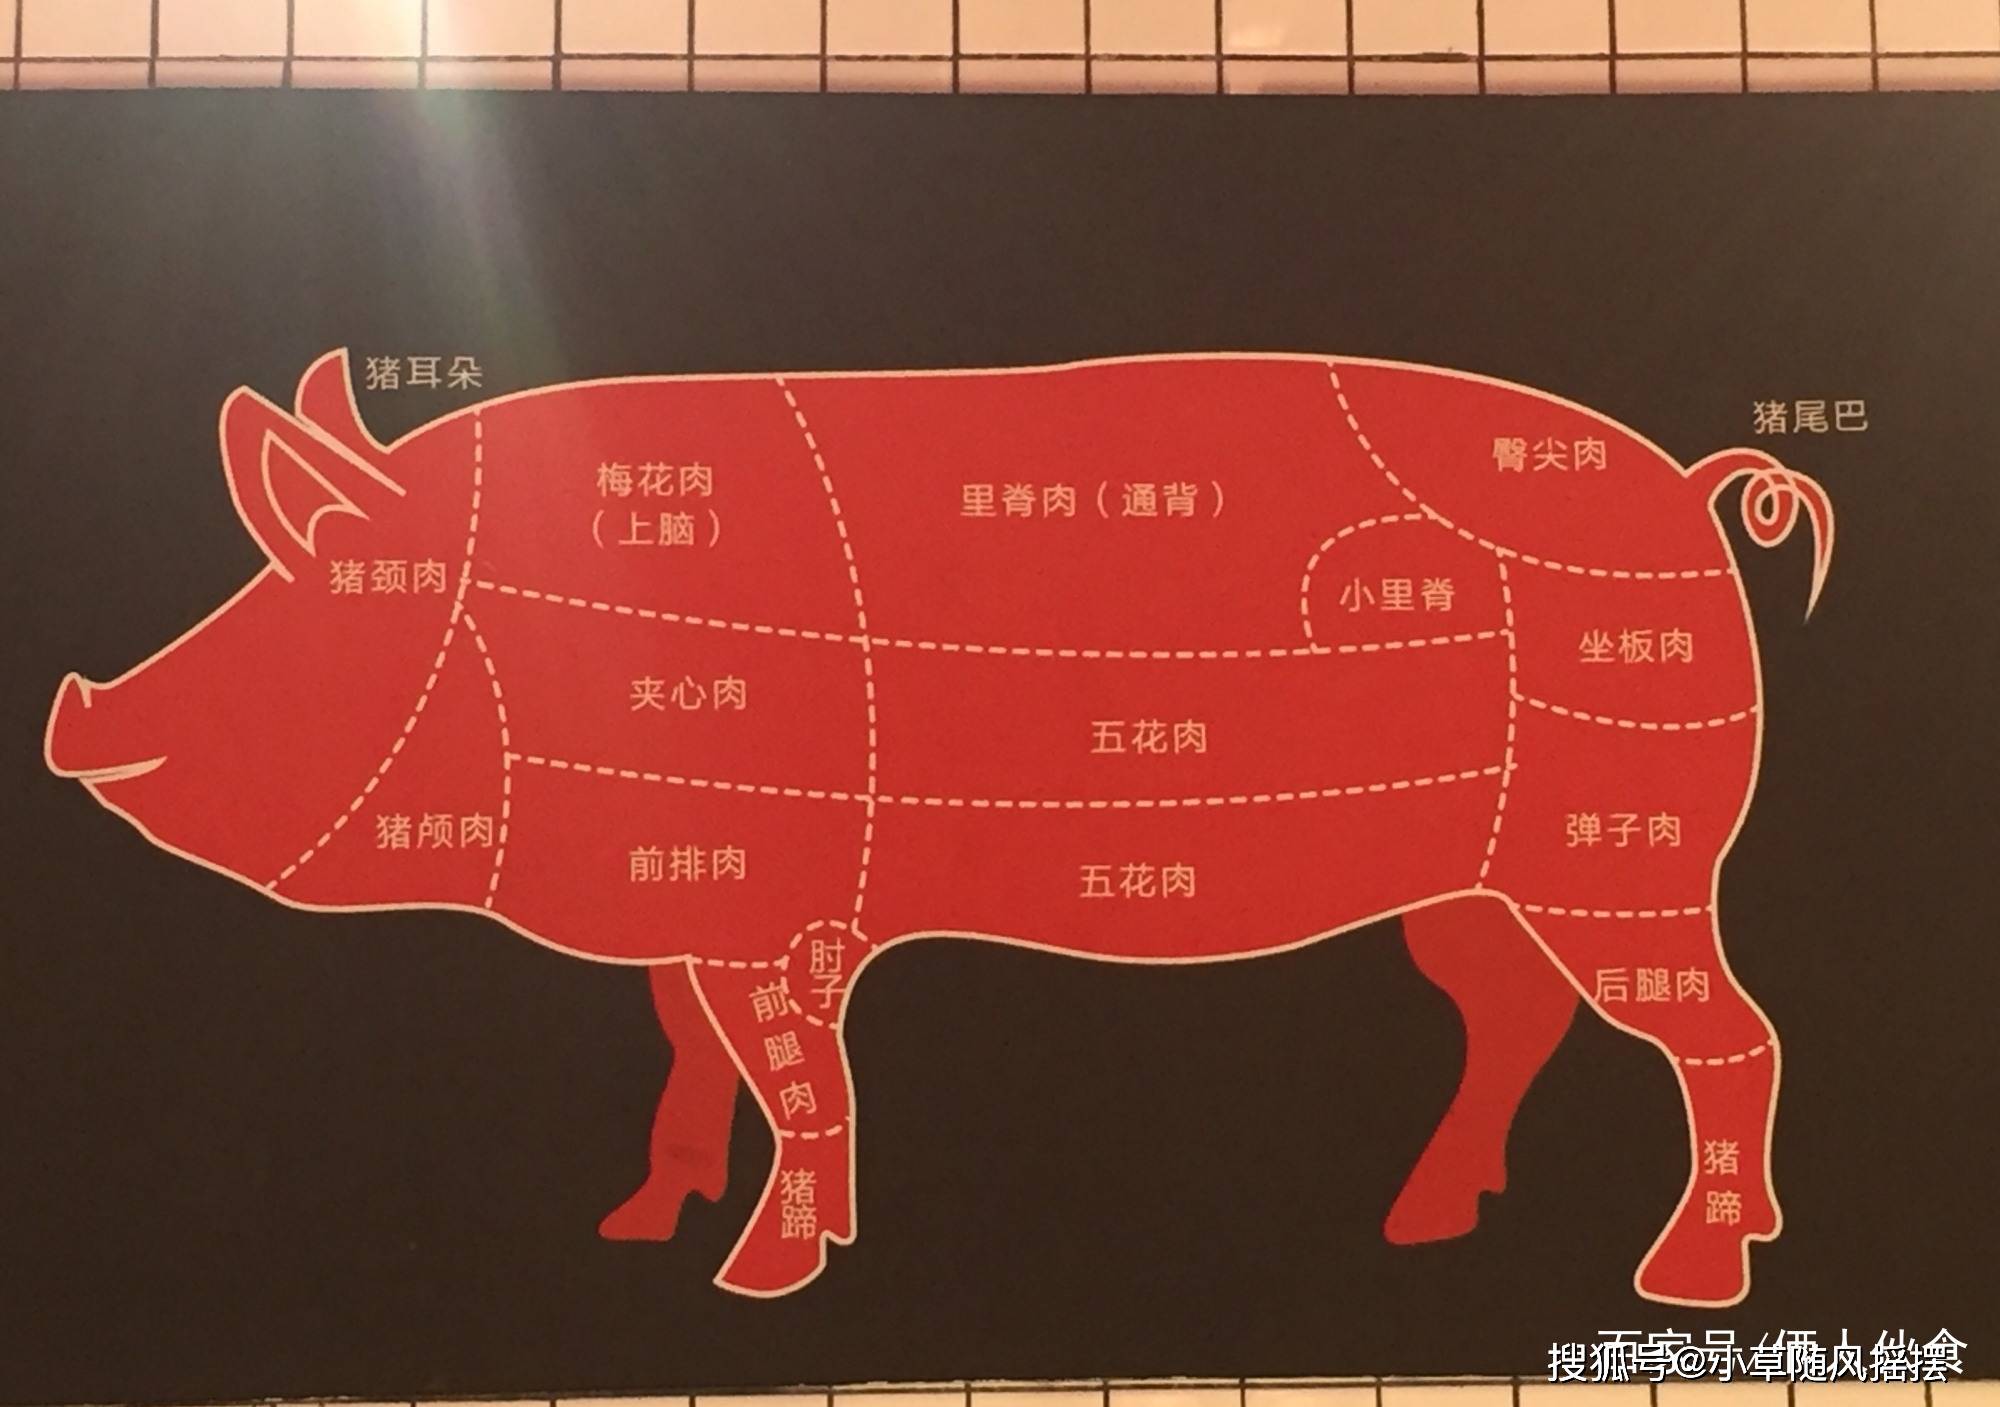 原创猪肉全身都是宝不同部位用处也不同看川菜大厨怎么说涨知识